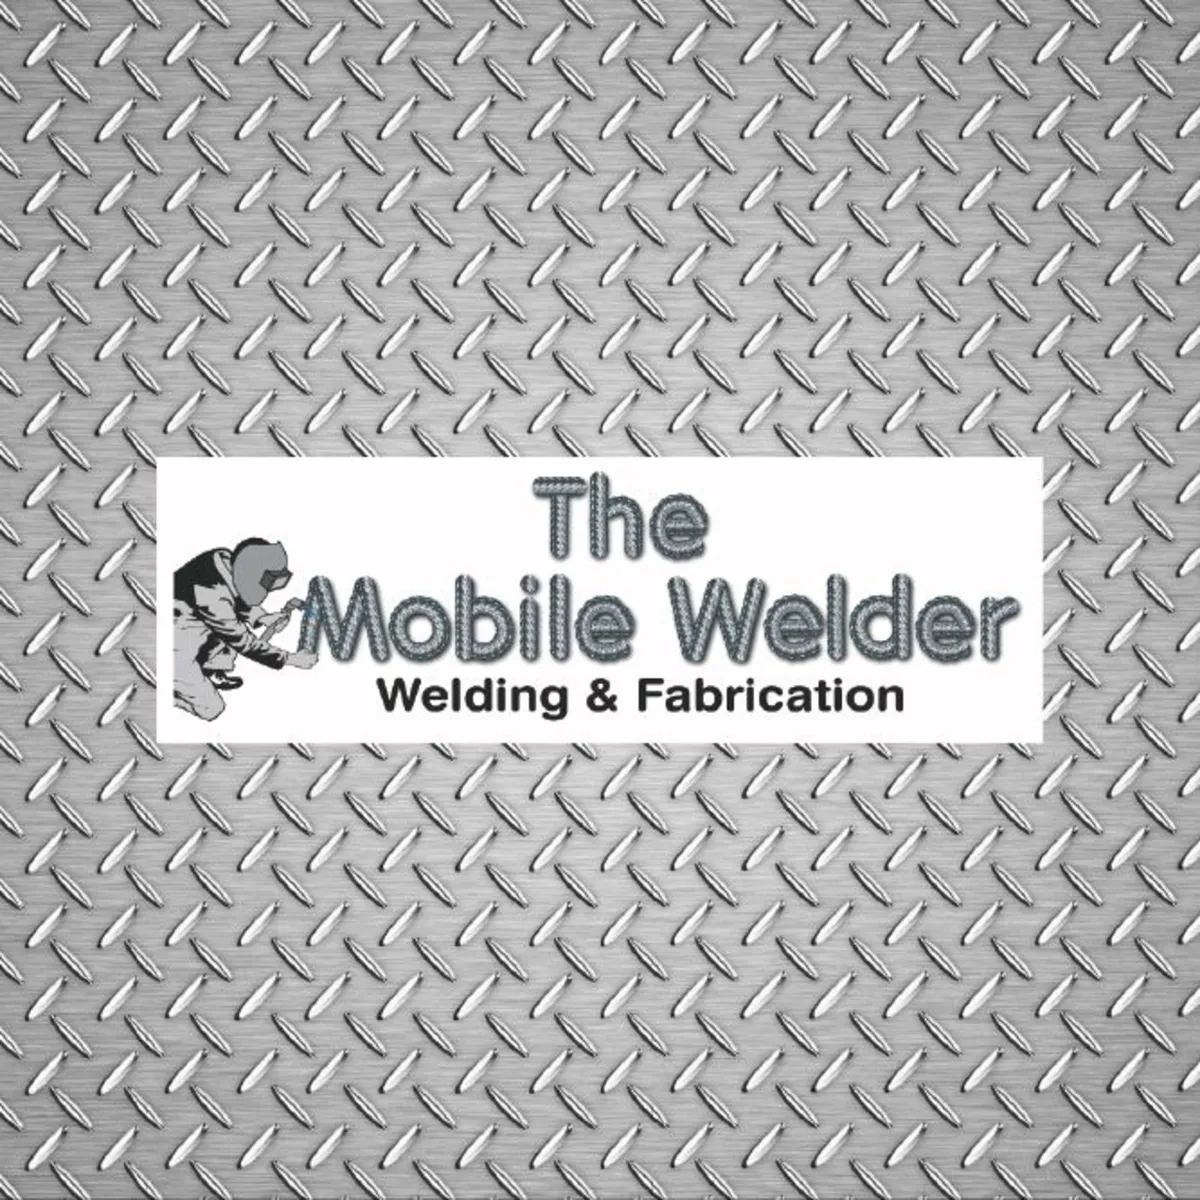 Mobile welder